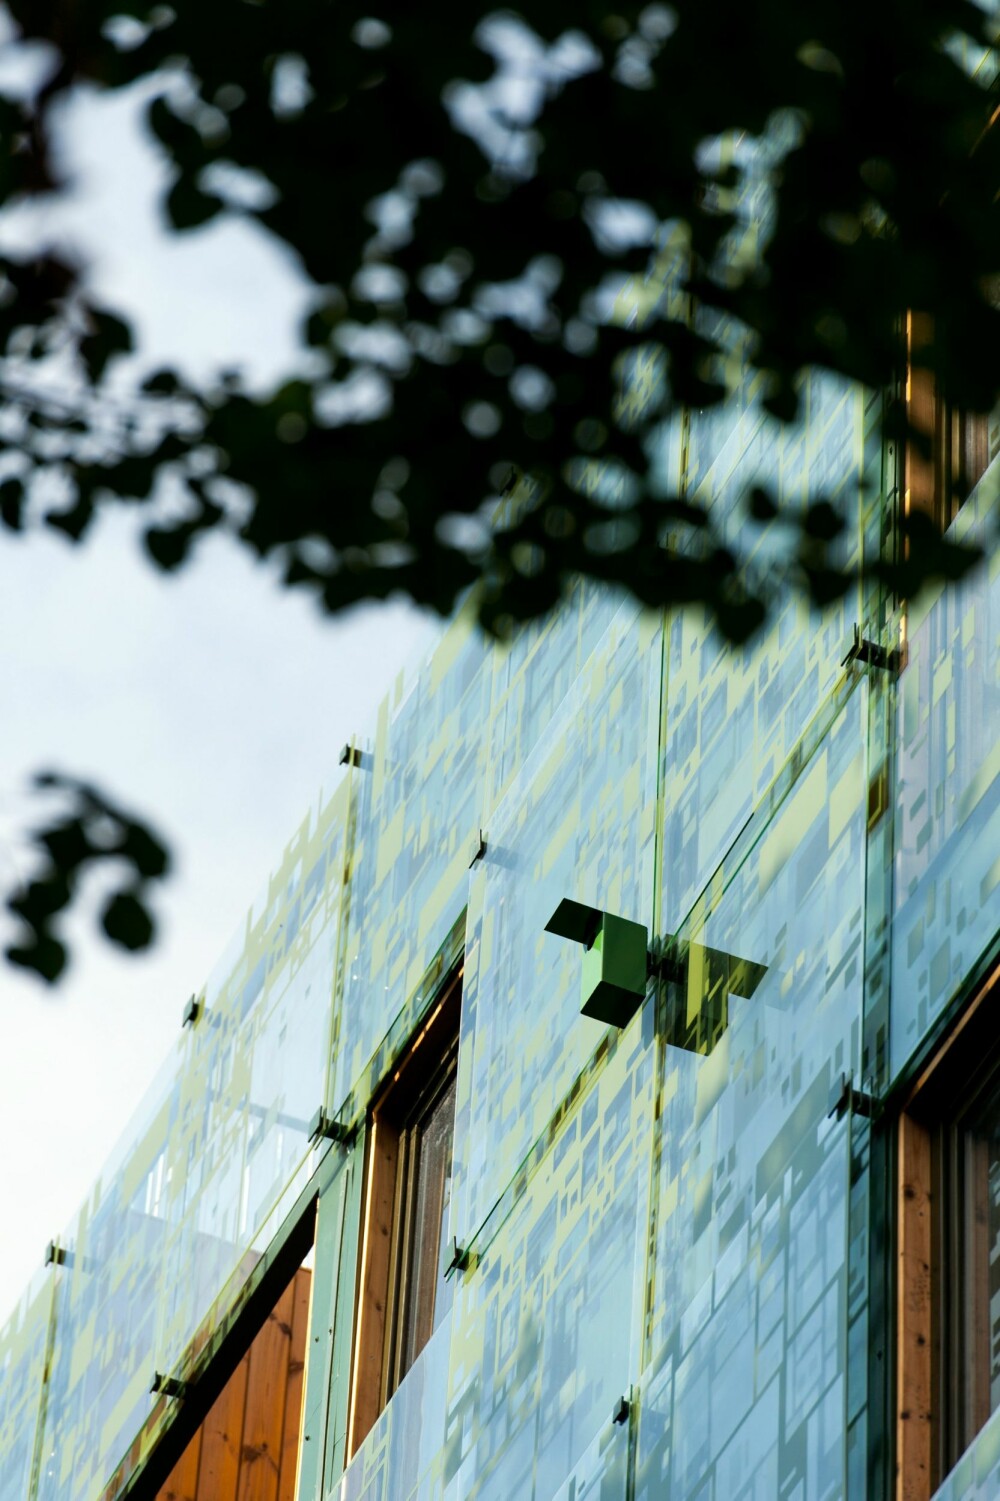 Bevinget arkitektur. Fasaden i
aluminium og glass er designet av Element arkitekter og utviklet i samarbeid med Modum
Glassindustri og Uppe. Her og der er det montert fuglekasser der byens småfugler kan ruge i fred.